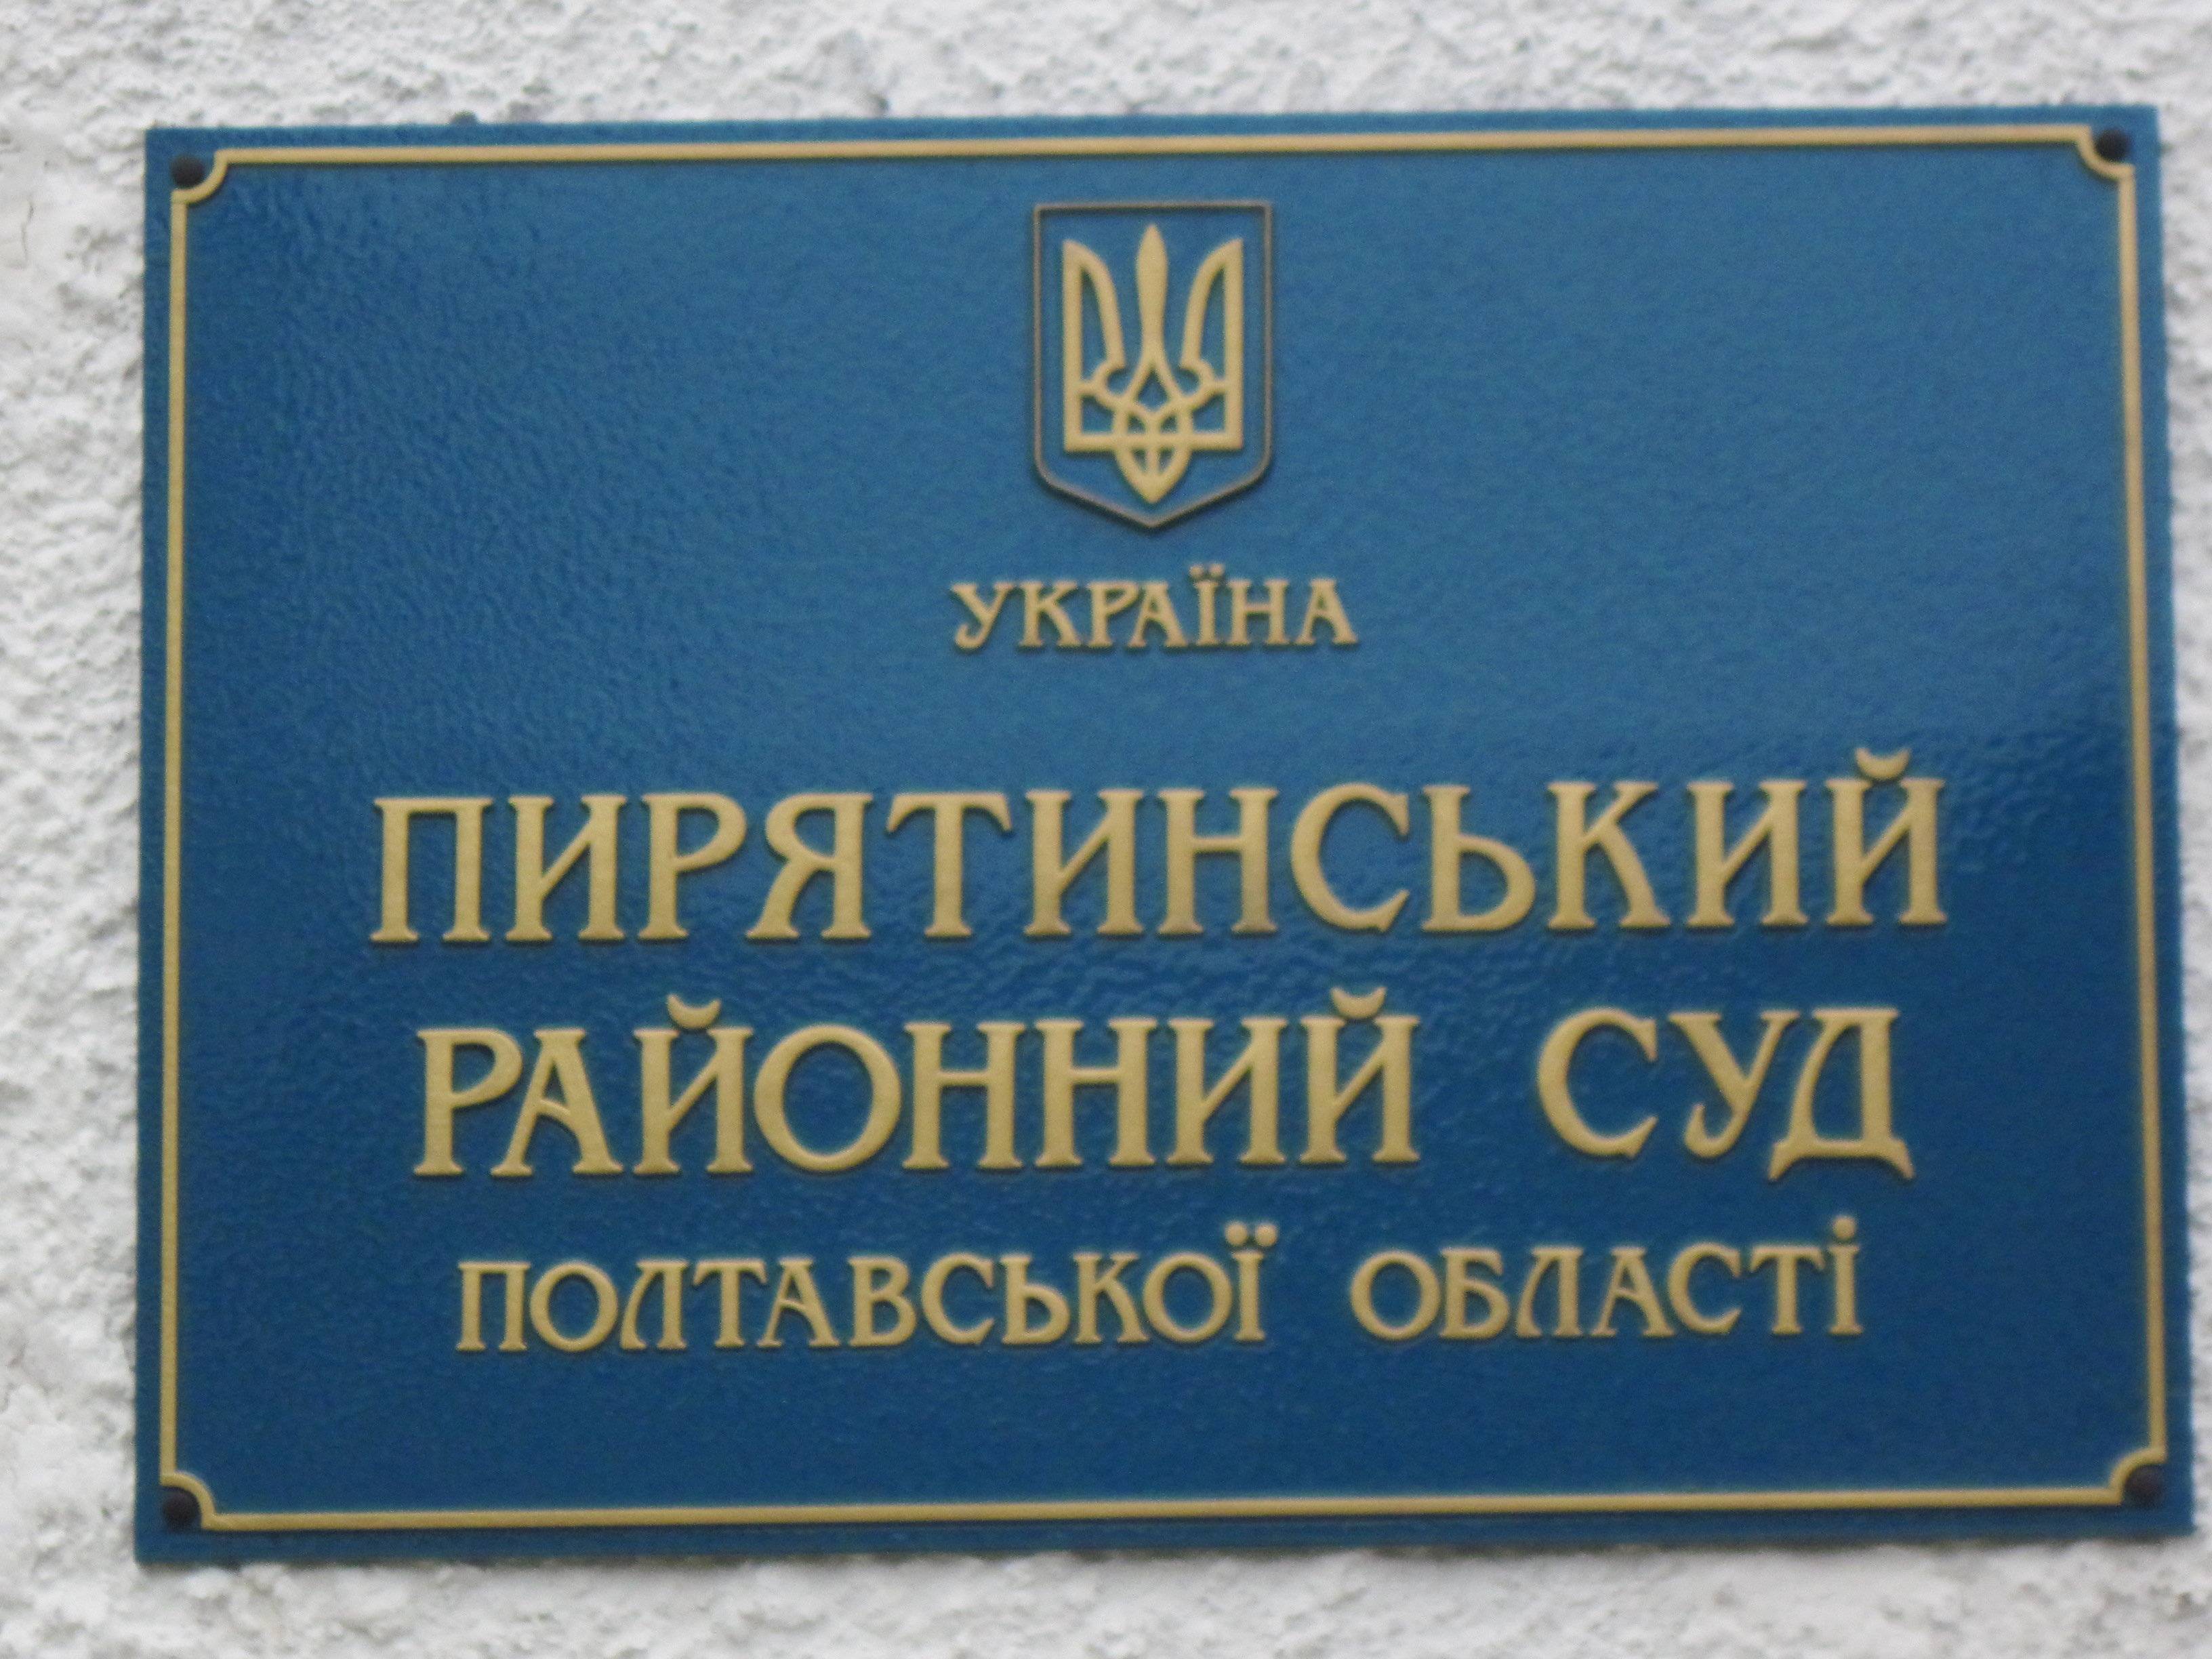 Пирятинський районний суд Полтавської області